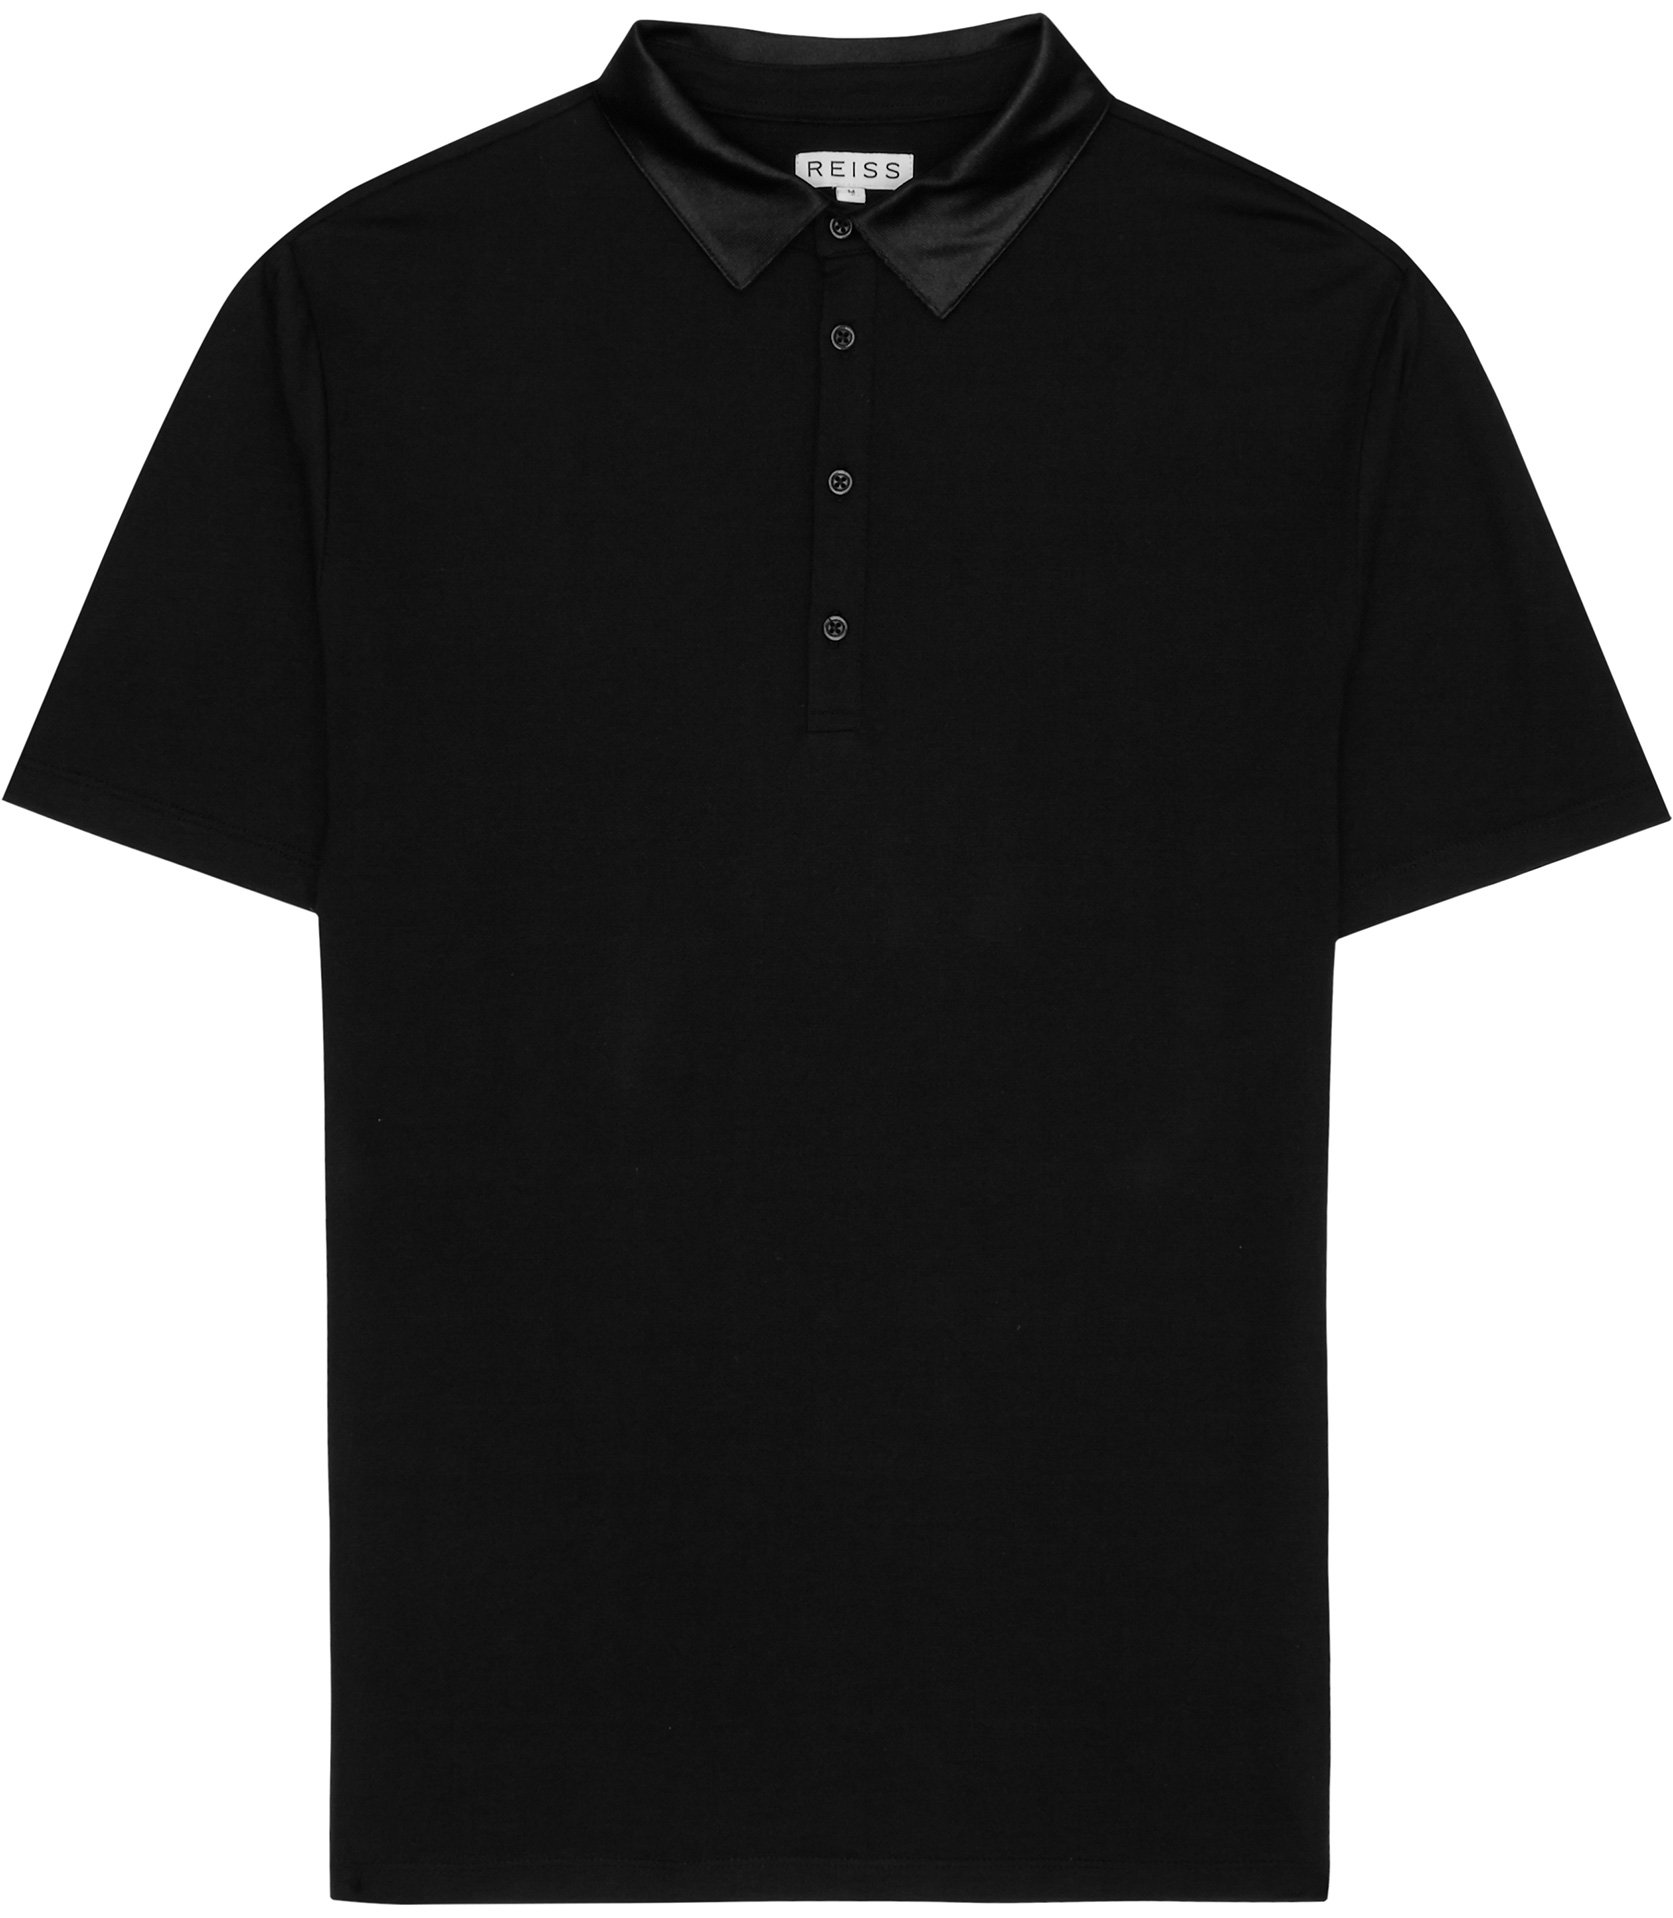 Reiss Daytona Grosgrain Collar Polo Shirt in Black for Men ...